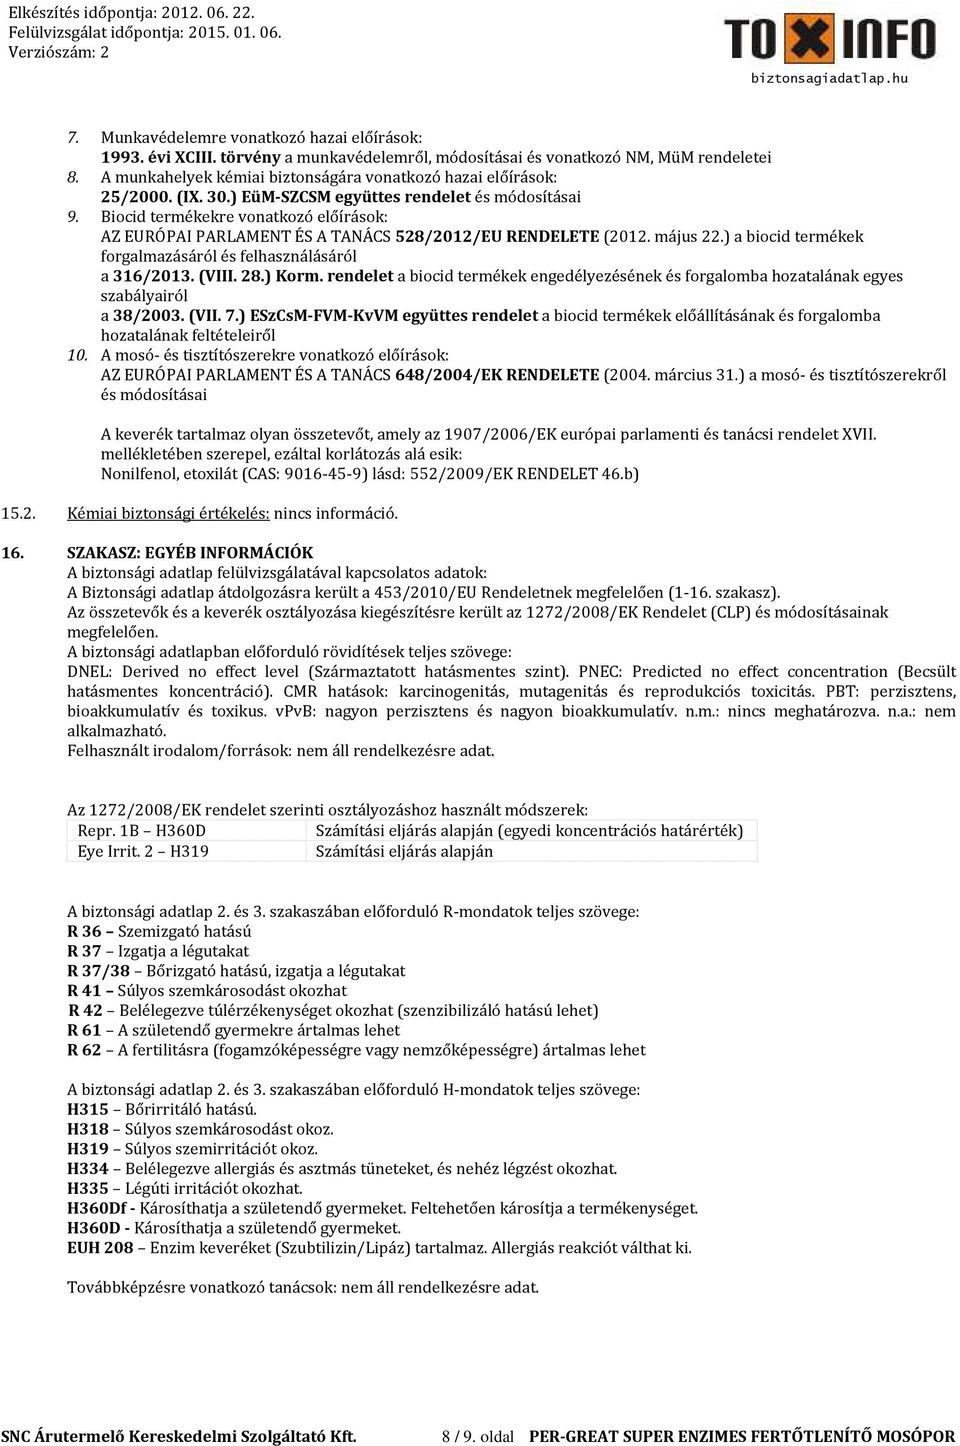 Biocid termékekre vonatkozó előírások: AZ EURÓPAI PARLAMENT ÉS A TANÁCS 528/2012/EU RENDELETE (2012. május 22.) a biocid termékek forgalmazásáról és felhasználásáról a 316/2013. (VIII. 28.) Korm.